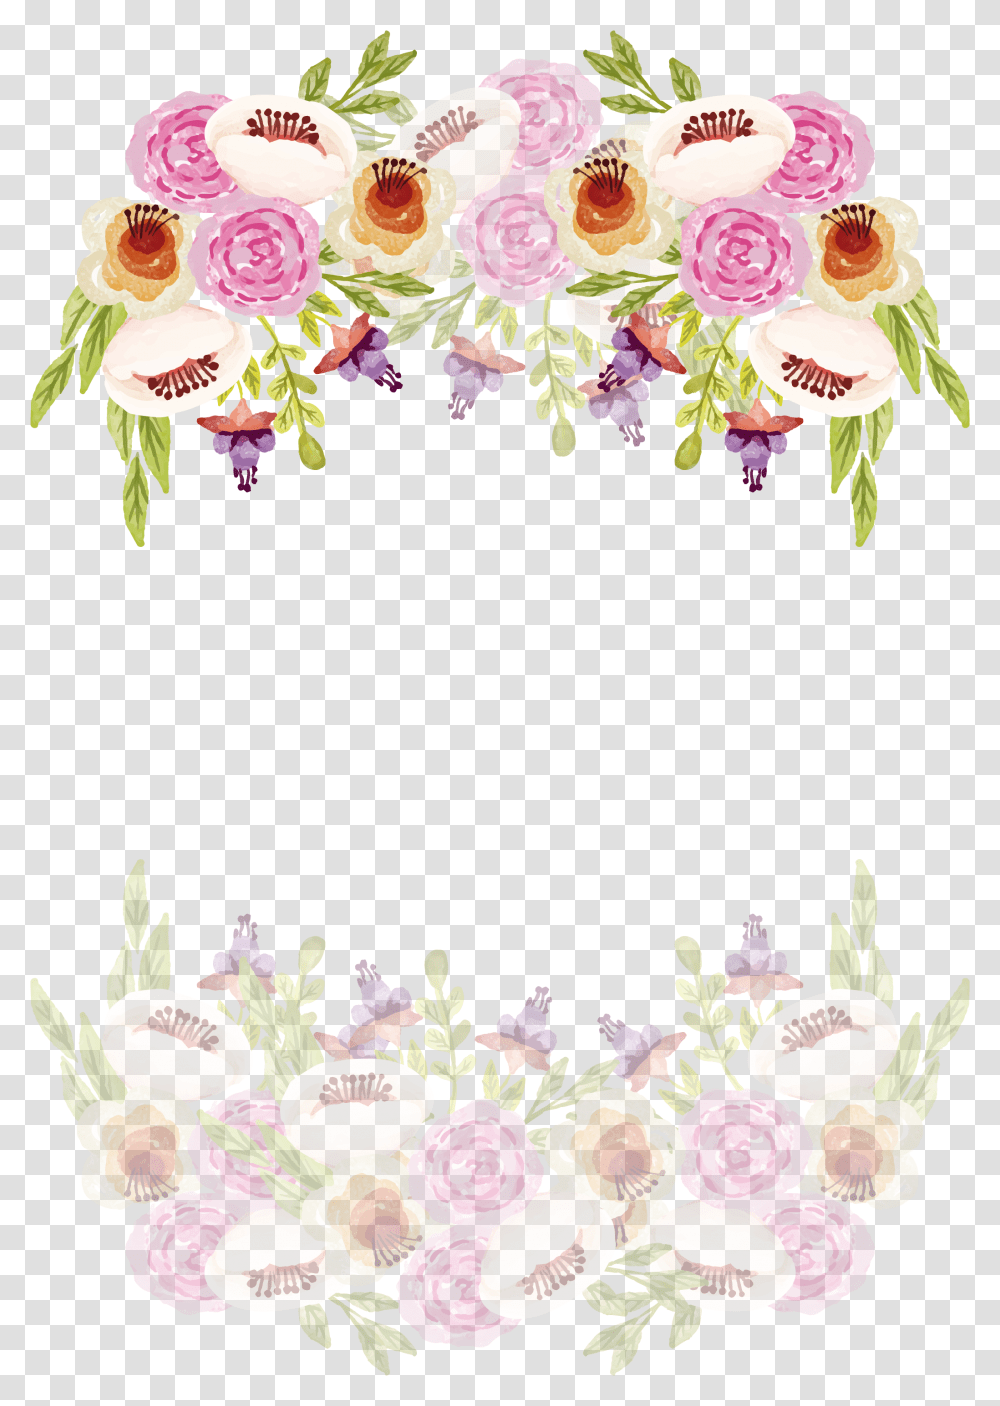 Romantic Watercolor Border Of Camellia Wedding Border Watercolor Romantic Floral, Floral Design, Pattern, Graphics, Art Transparent Png